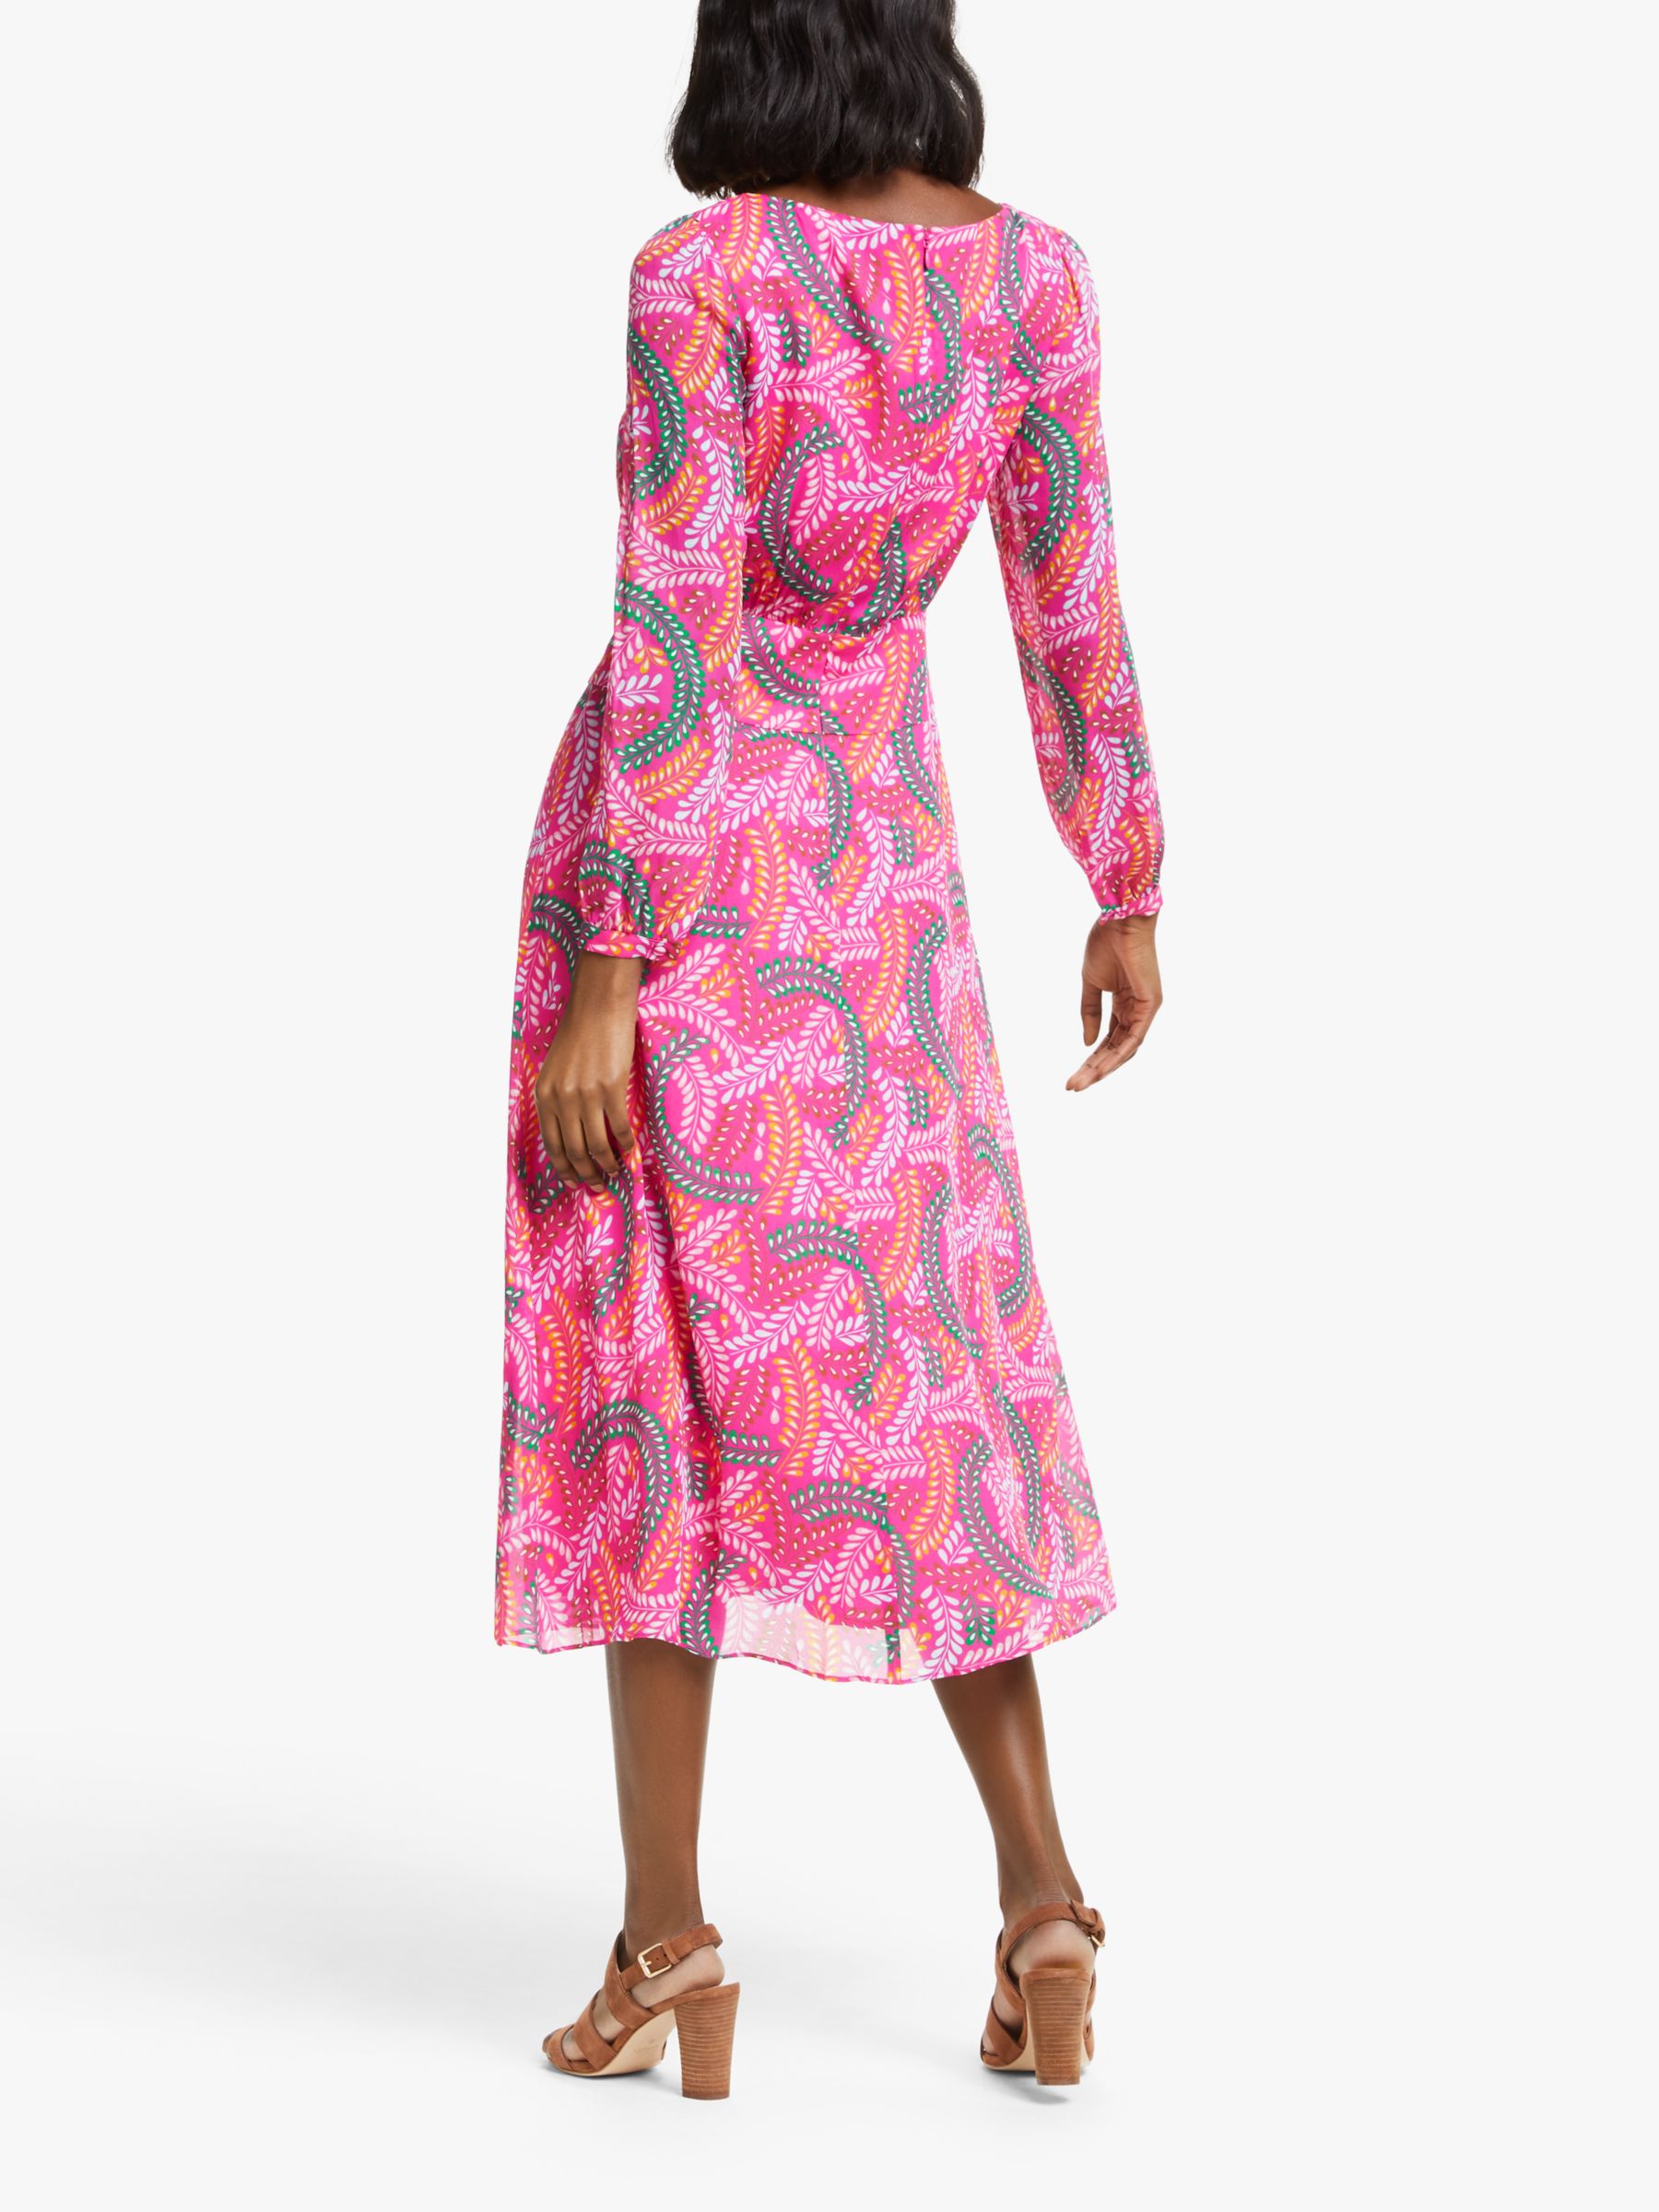 Boden Ingrid Midi Dress, Party Pink/Swish at John Lewis & Partners